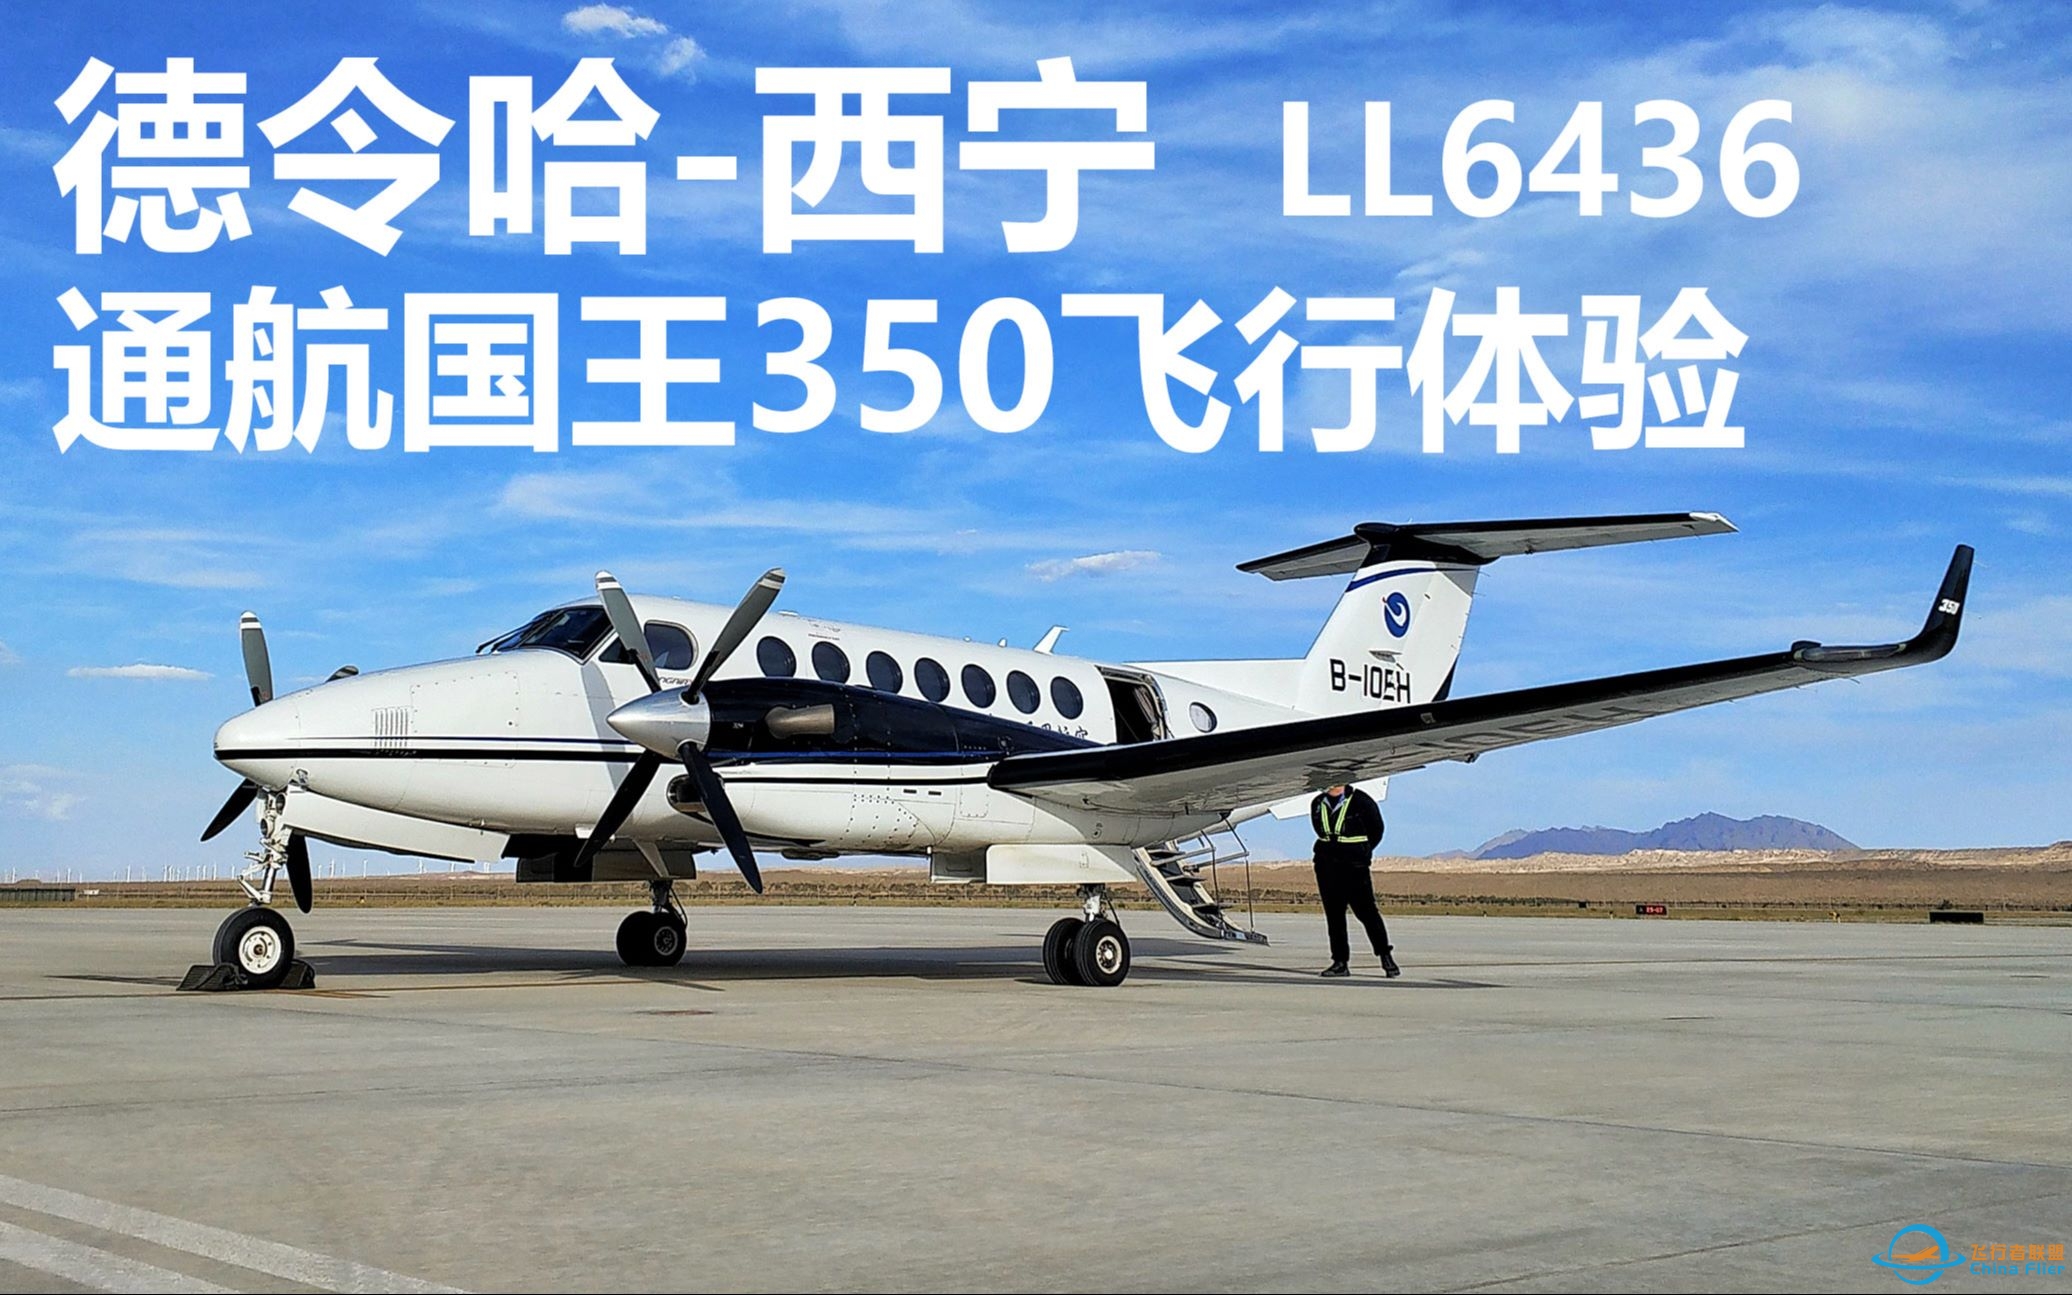 【柴达木上空的小飞机】德令哈-西宁 空中国王350飞行体验-2631 